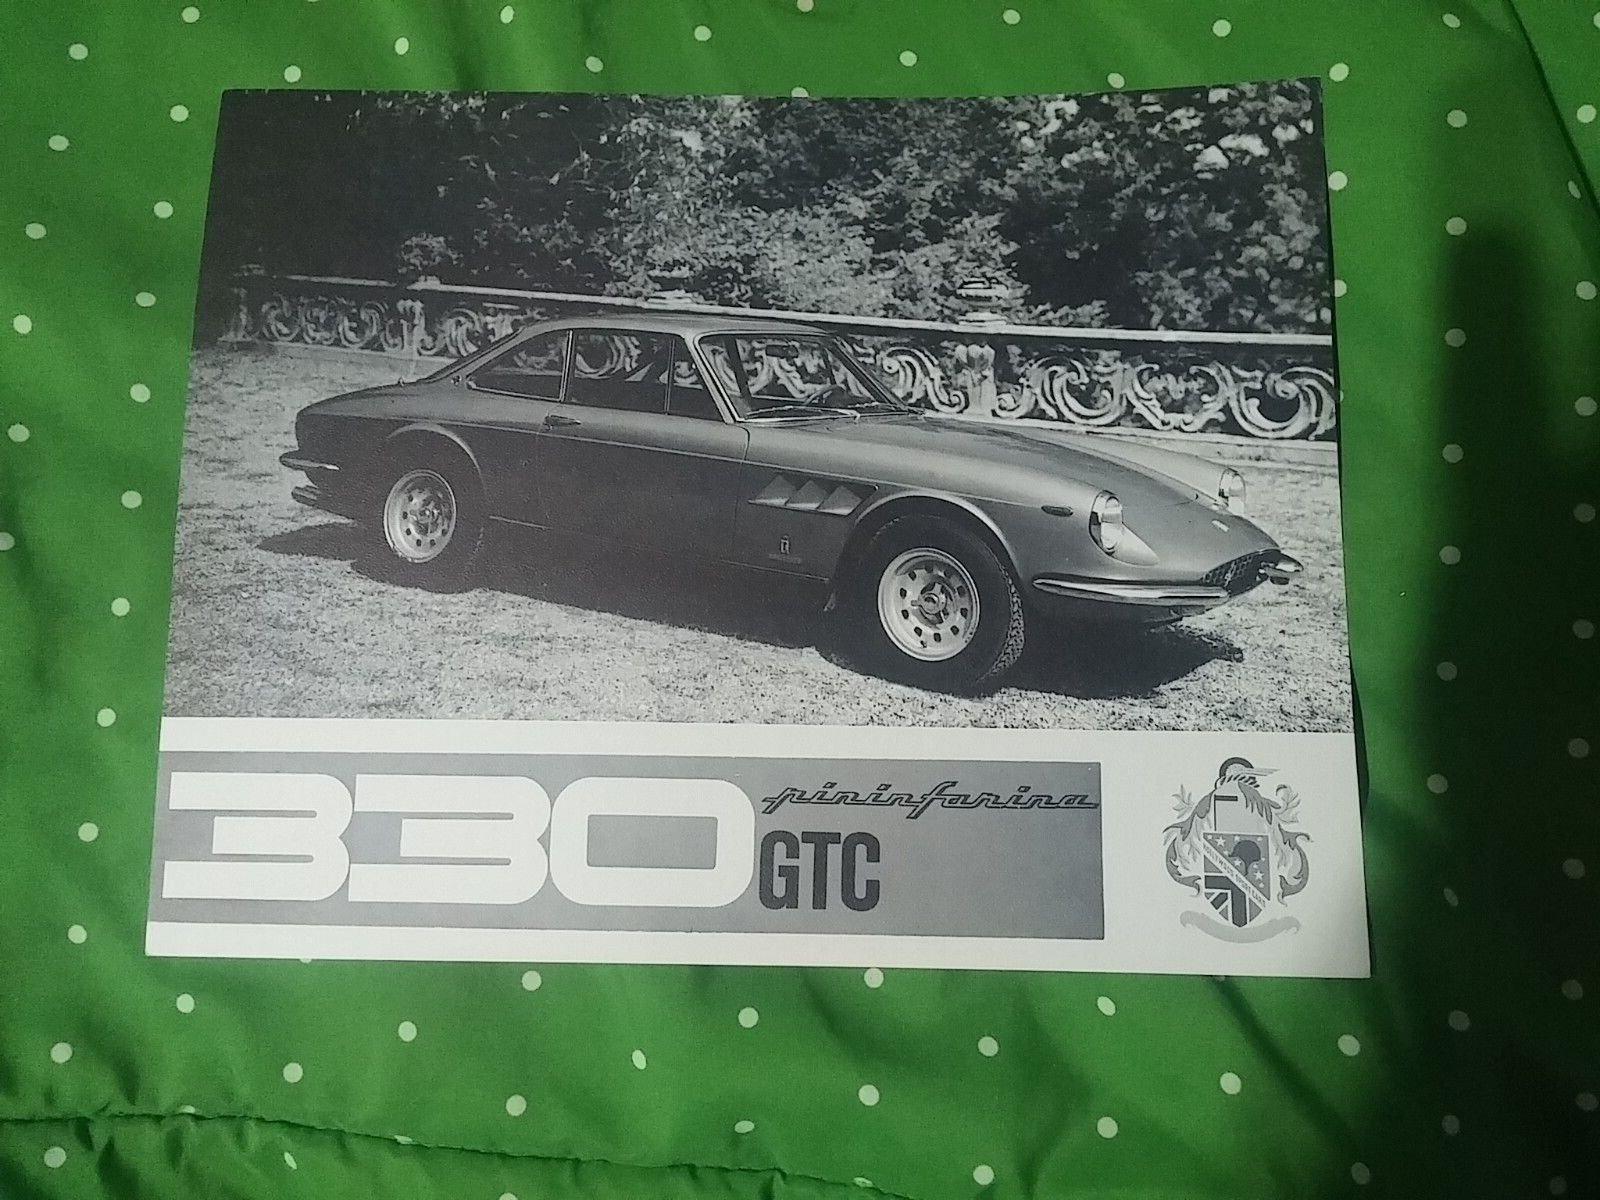 1967 Ferrari 330 GTC dealer cut sheet brochure original VG condition